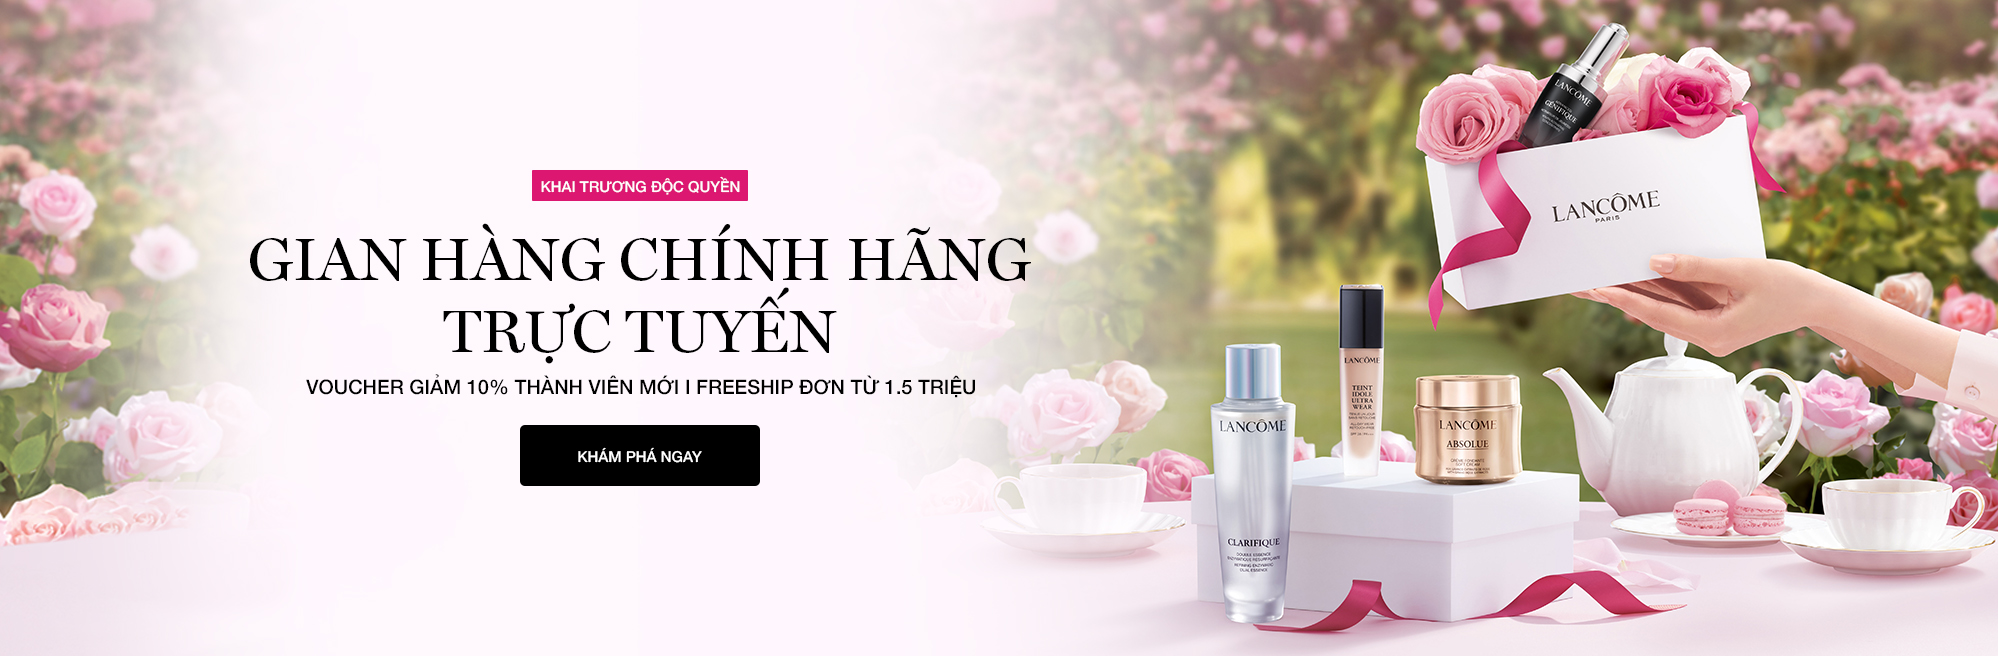 Lancôme Việt Nam ra mắt của hàng trực tuyến e-boutique chính thức tại website www.lancome.vn